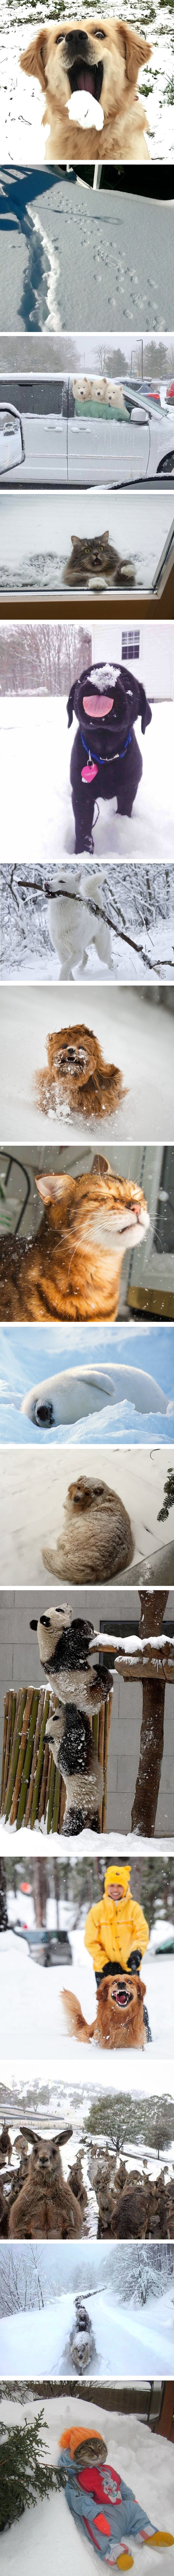 Snježne fotke slatkih životinja koje će rastopiti i najhladnija srca 